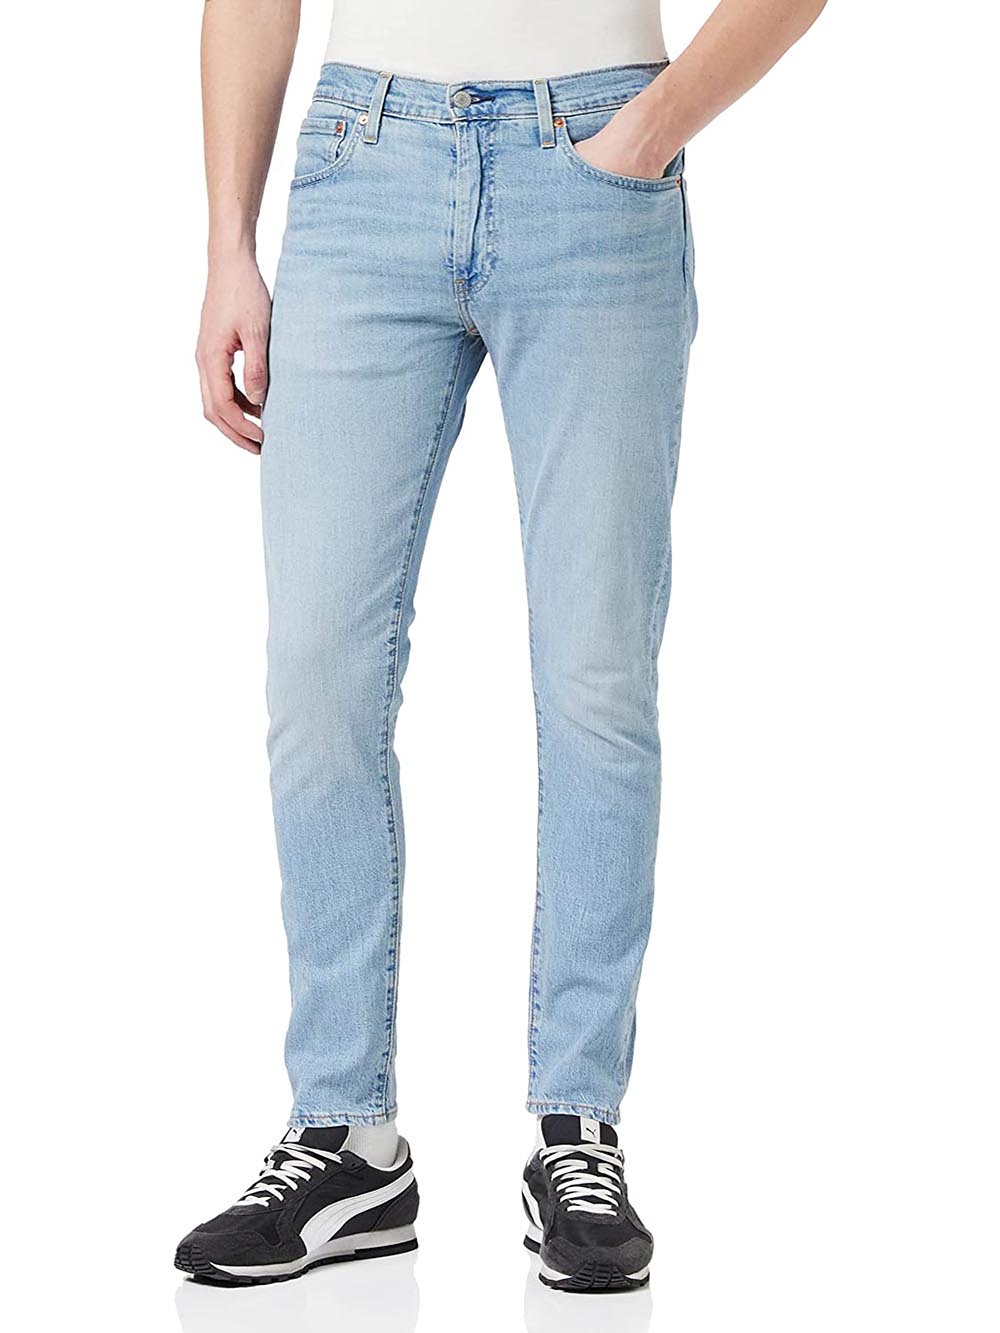 Levi's Jeans Uomo 512 Slim Taper 28833 Chiaro